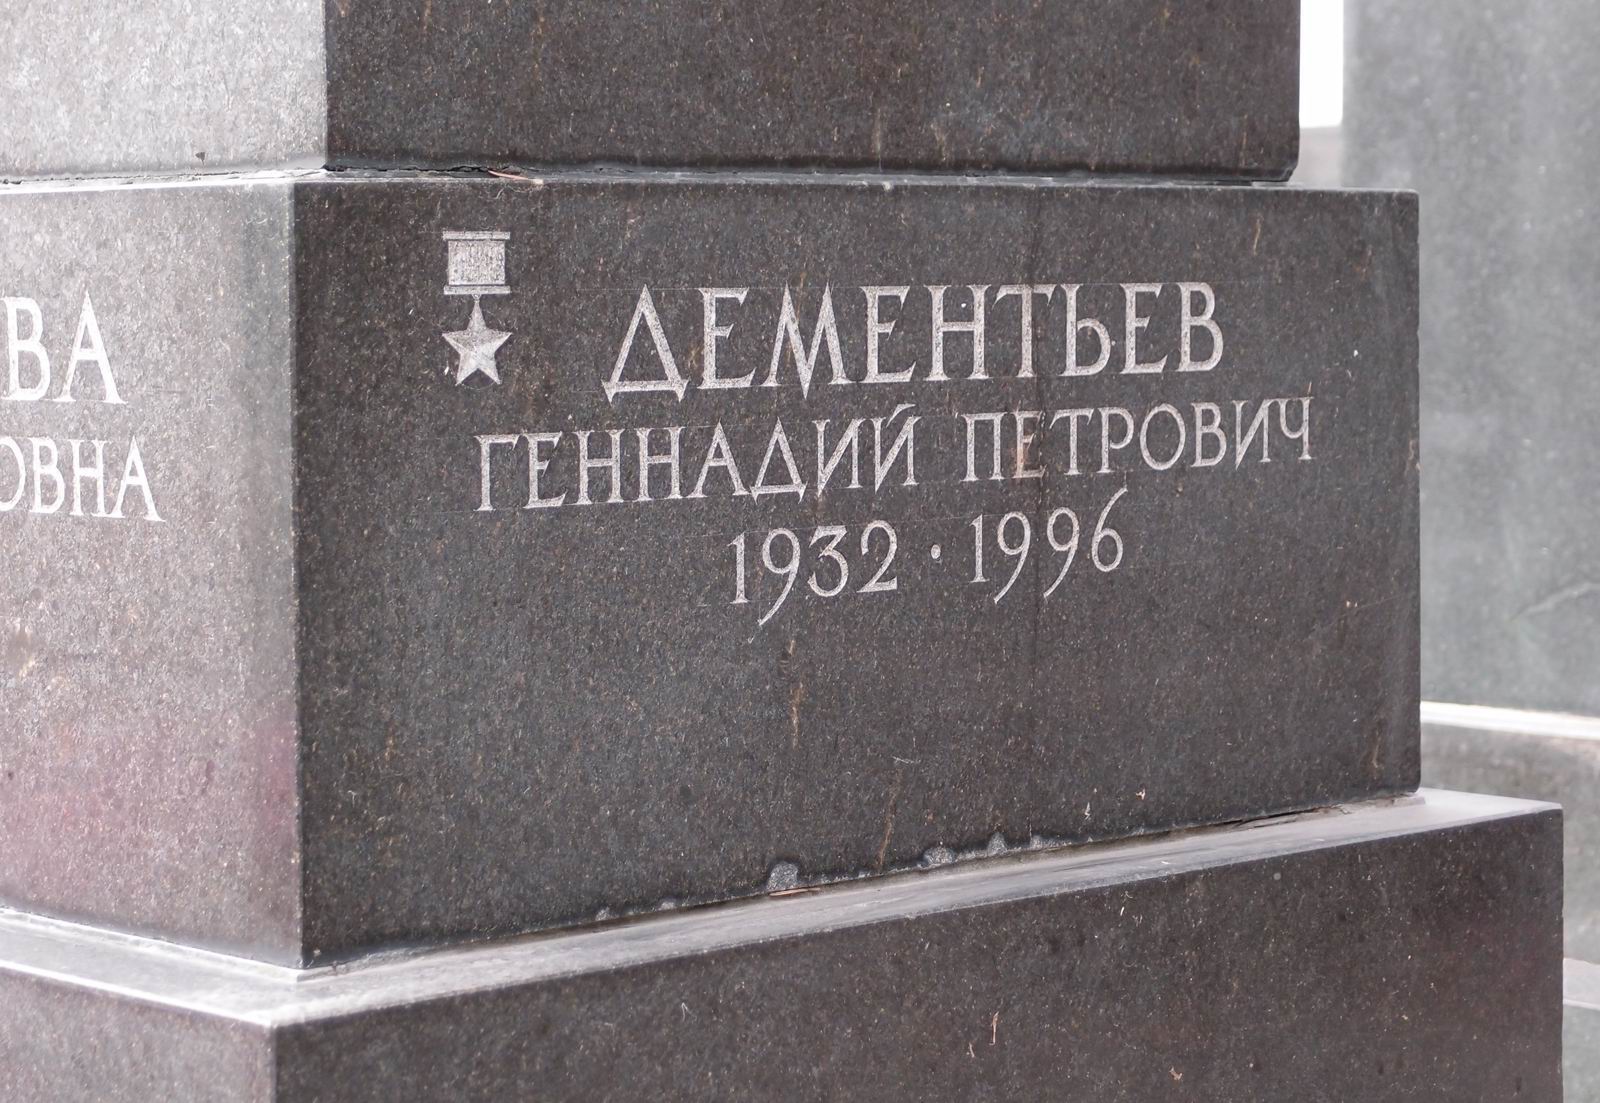 Памятник на могиле Дементьева П.В. (1907-1977), ск. М.Аникушин, арх. С.Бухаев, на Новодевичьем кладбище (7-13-13).